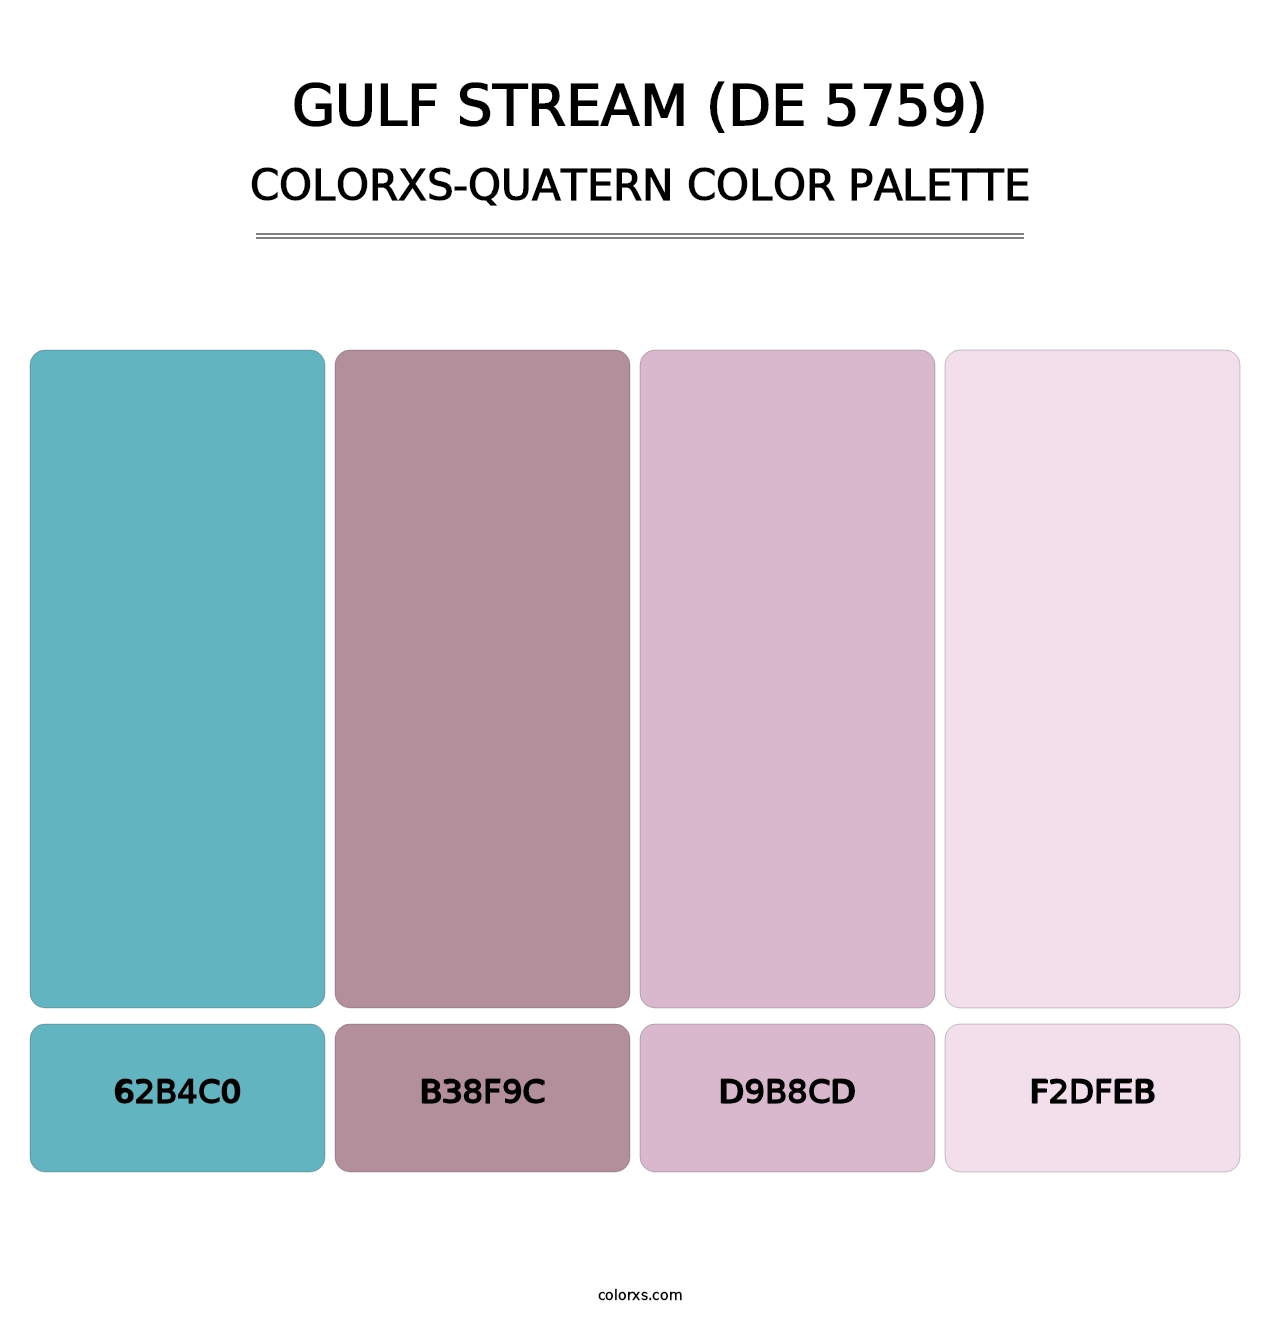 Gulf Stream (DE 5759) - Colorxs Quatern Palette